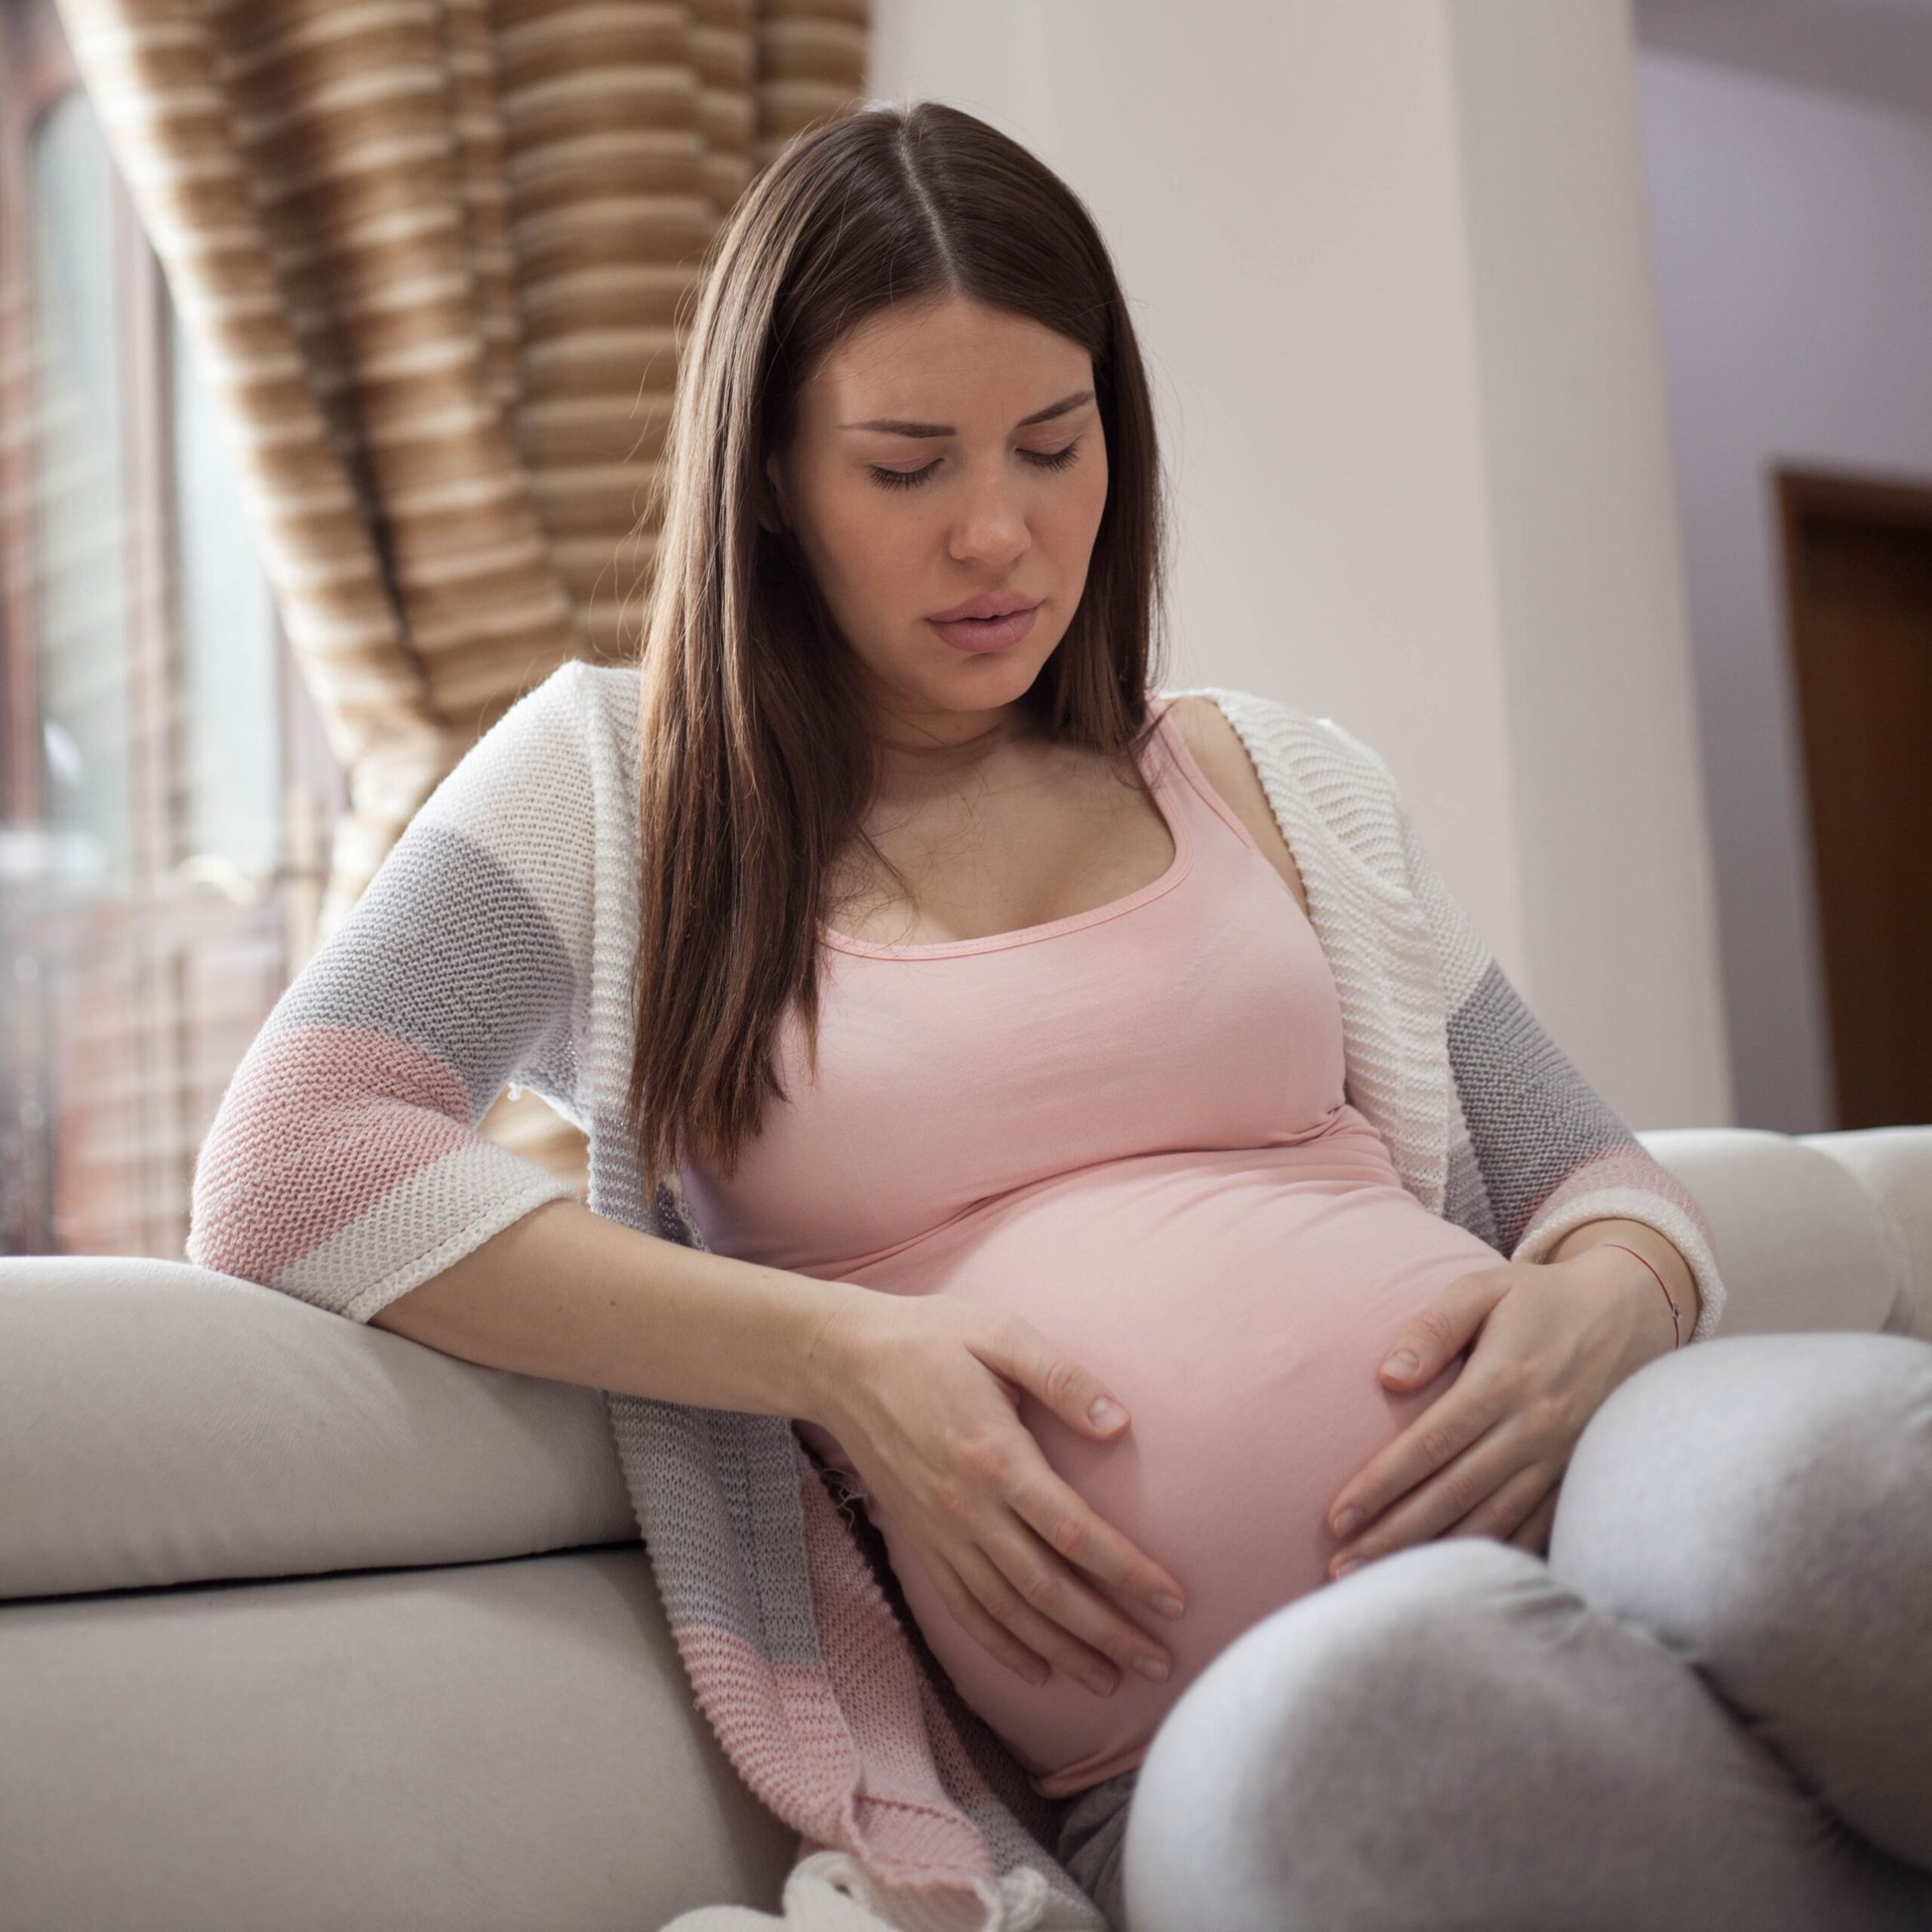 femme enceinte assise qui tient son ventre